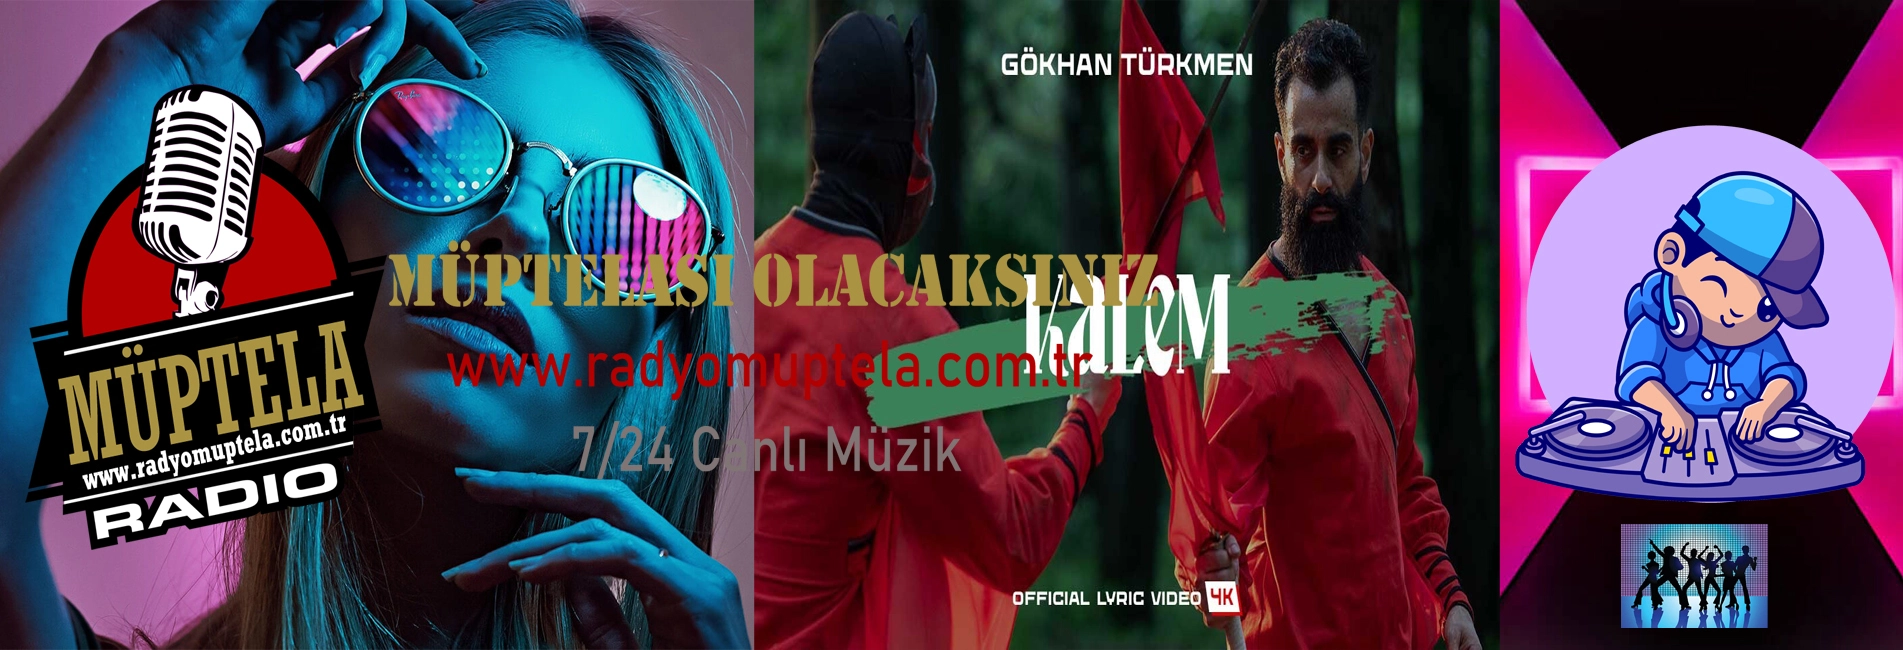 Gökhan Türkmen'in Yeni Teklisi Kalem Yayınlandı